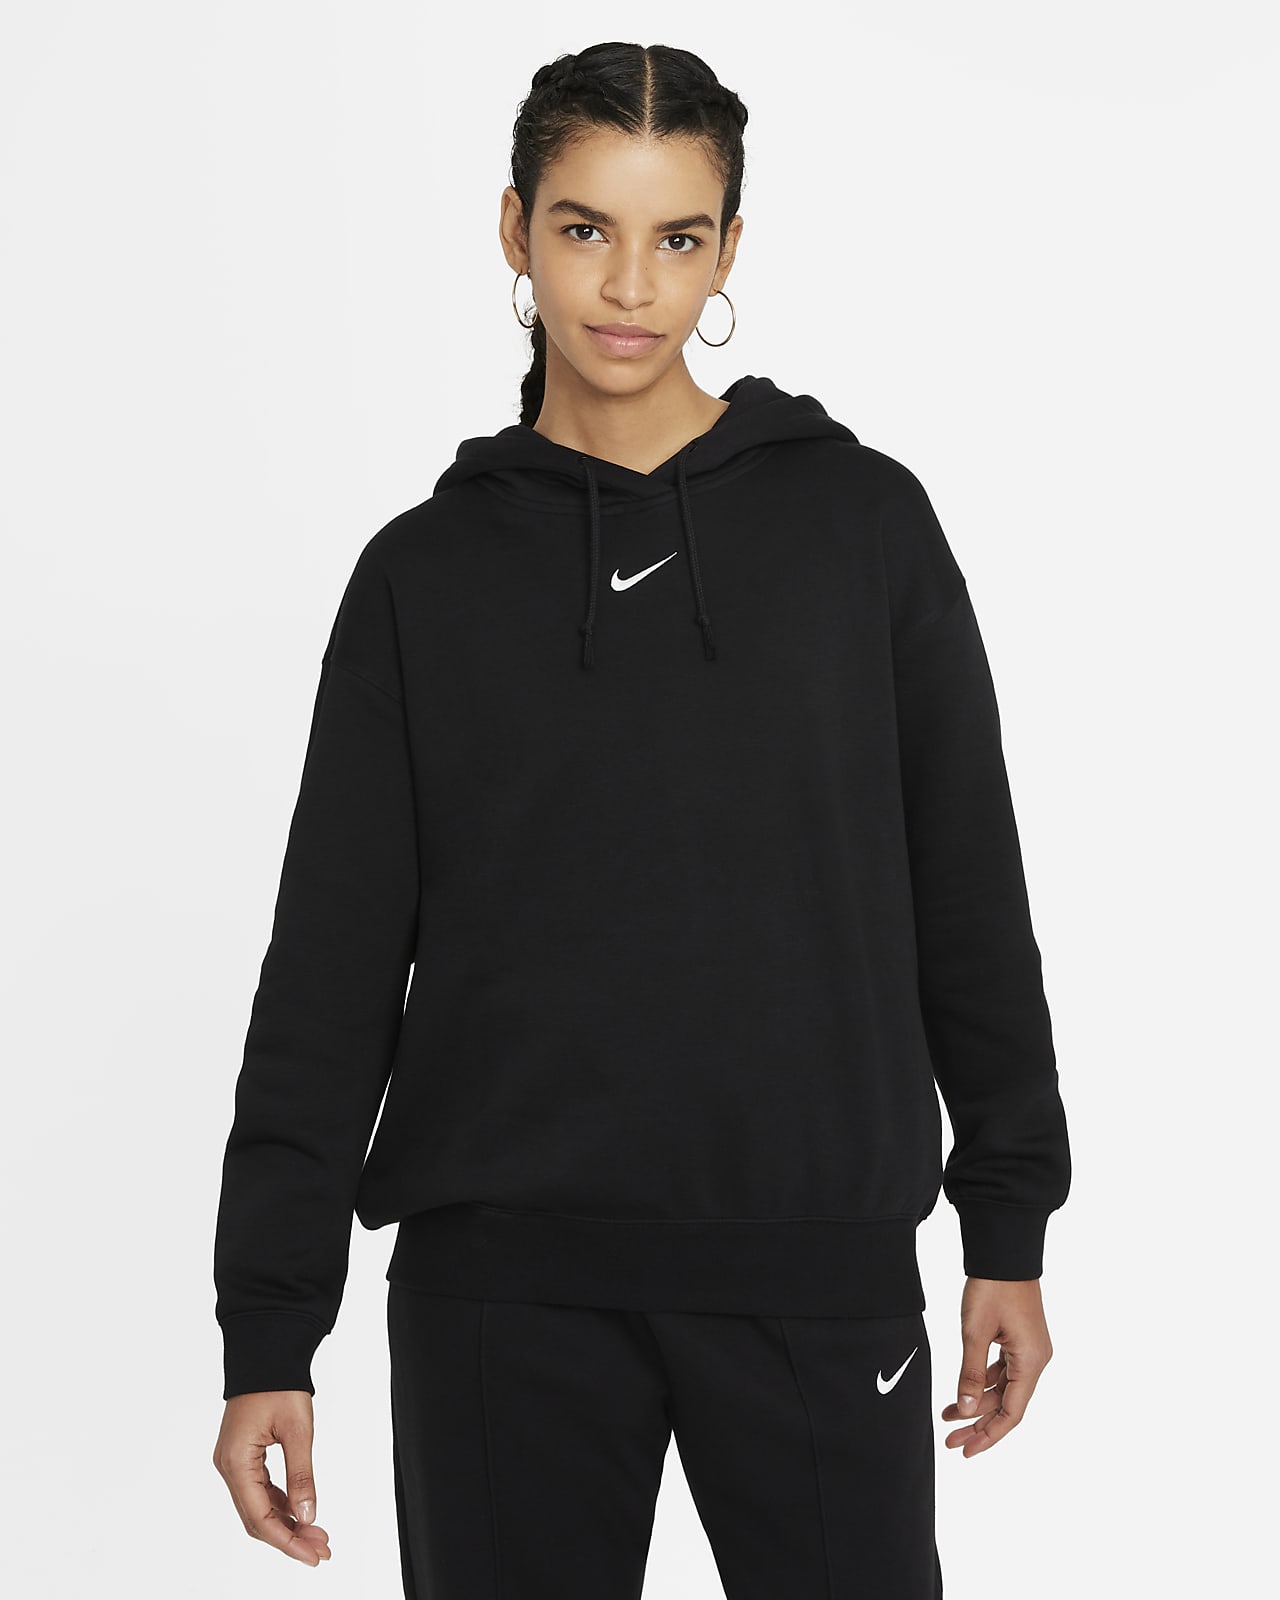 Nike Sportswear Essential Collection Women's Oversized Fleece Hoodie. Nike GB